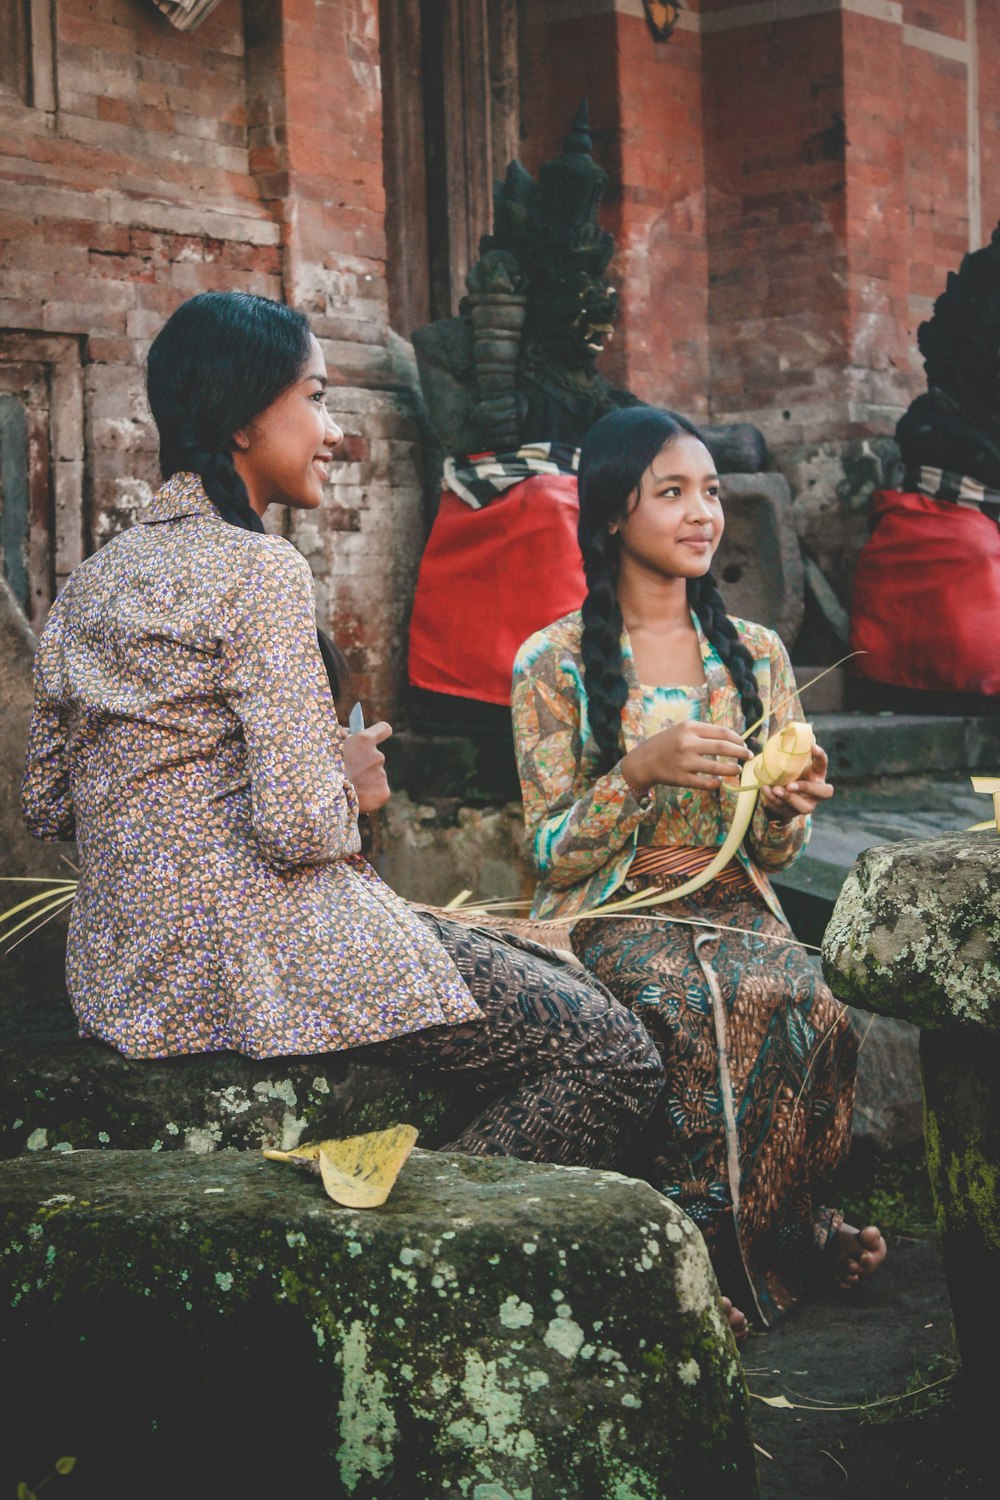 ナイフを持ちながら座っている女性の横で編んだココナッツの葉を持っている女性